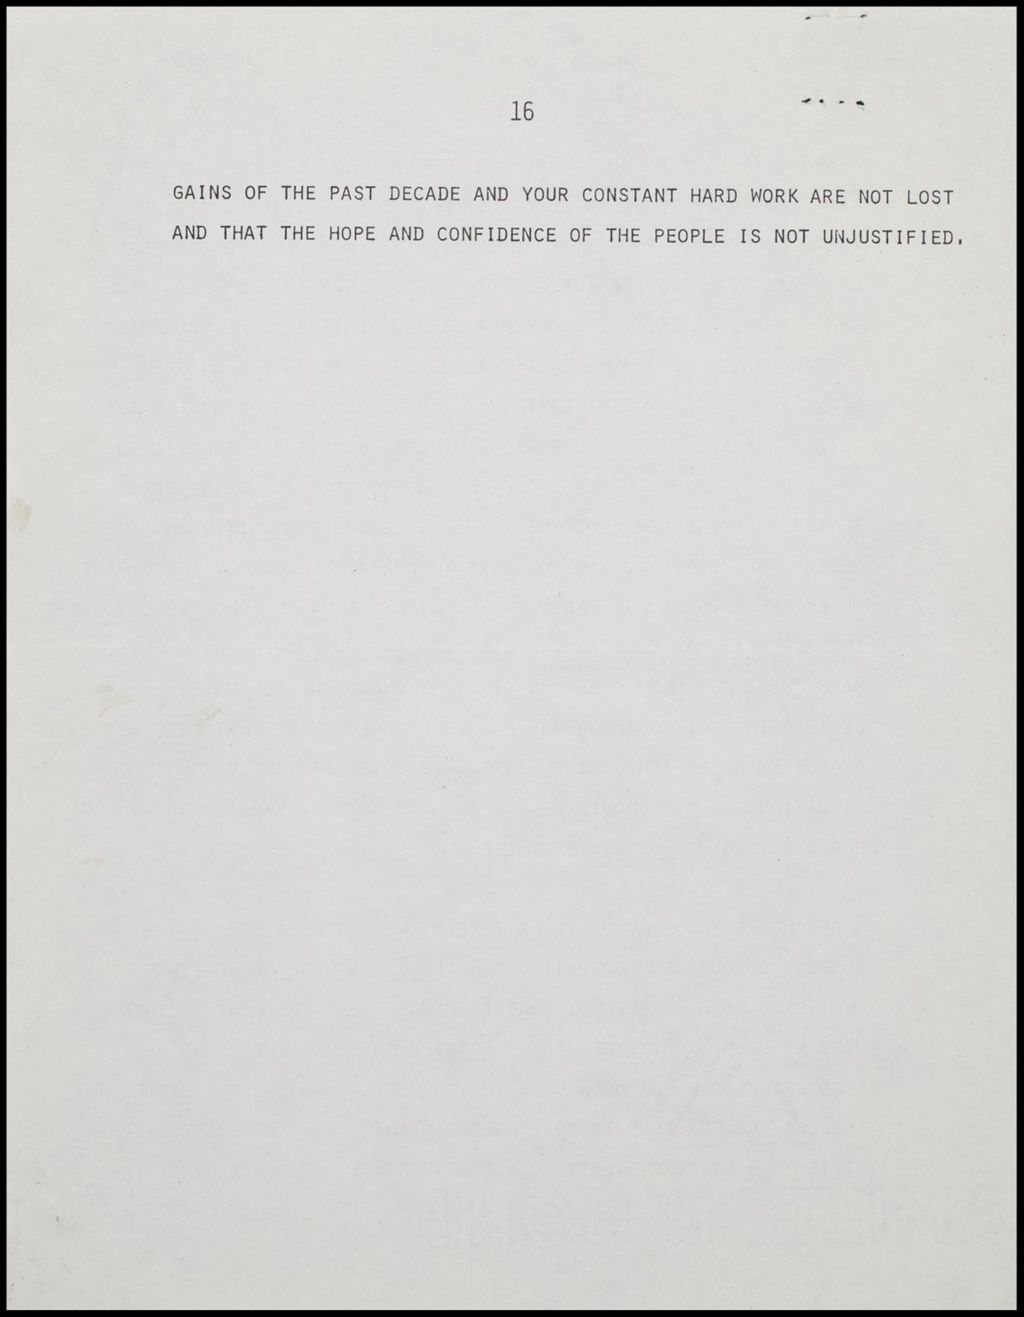 Program Information - Committee Report, 1973 (Folder II-1008)